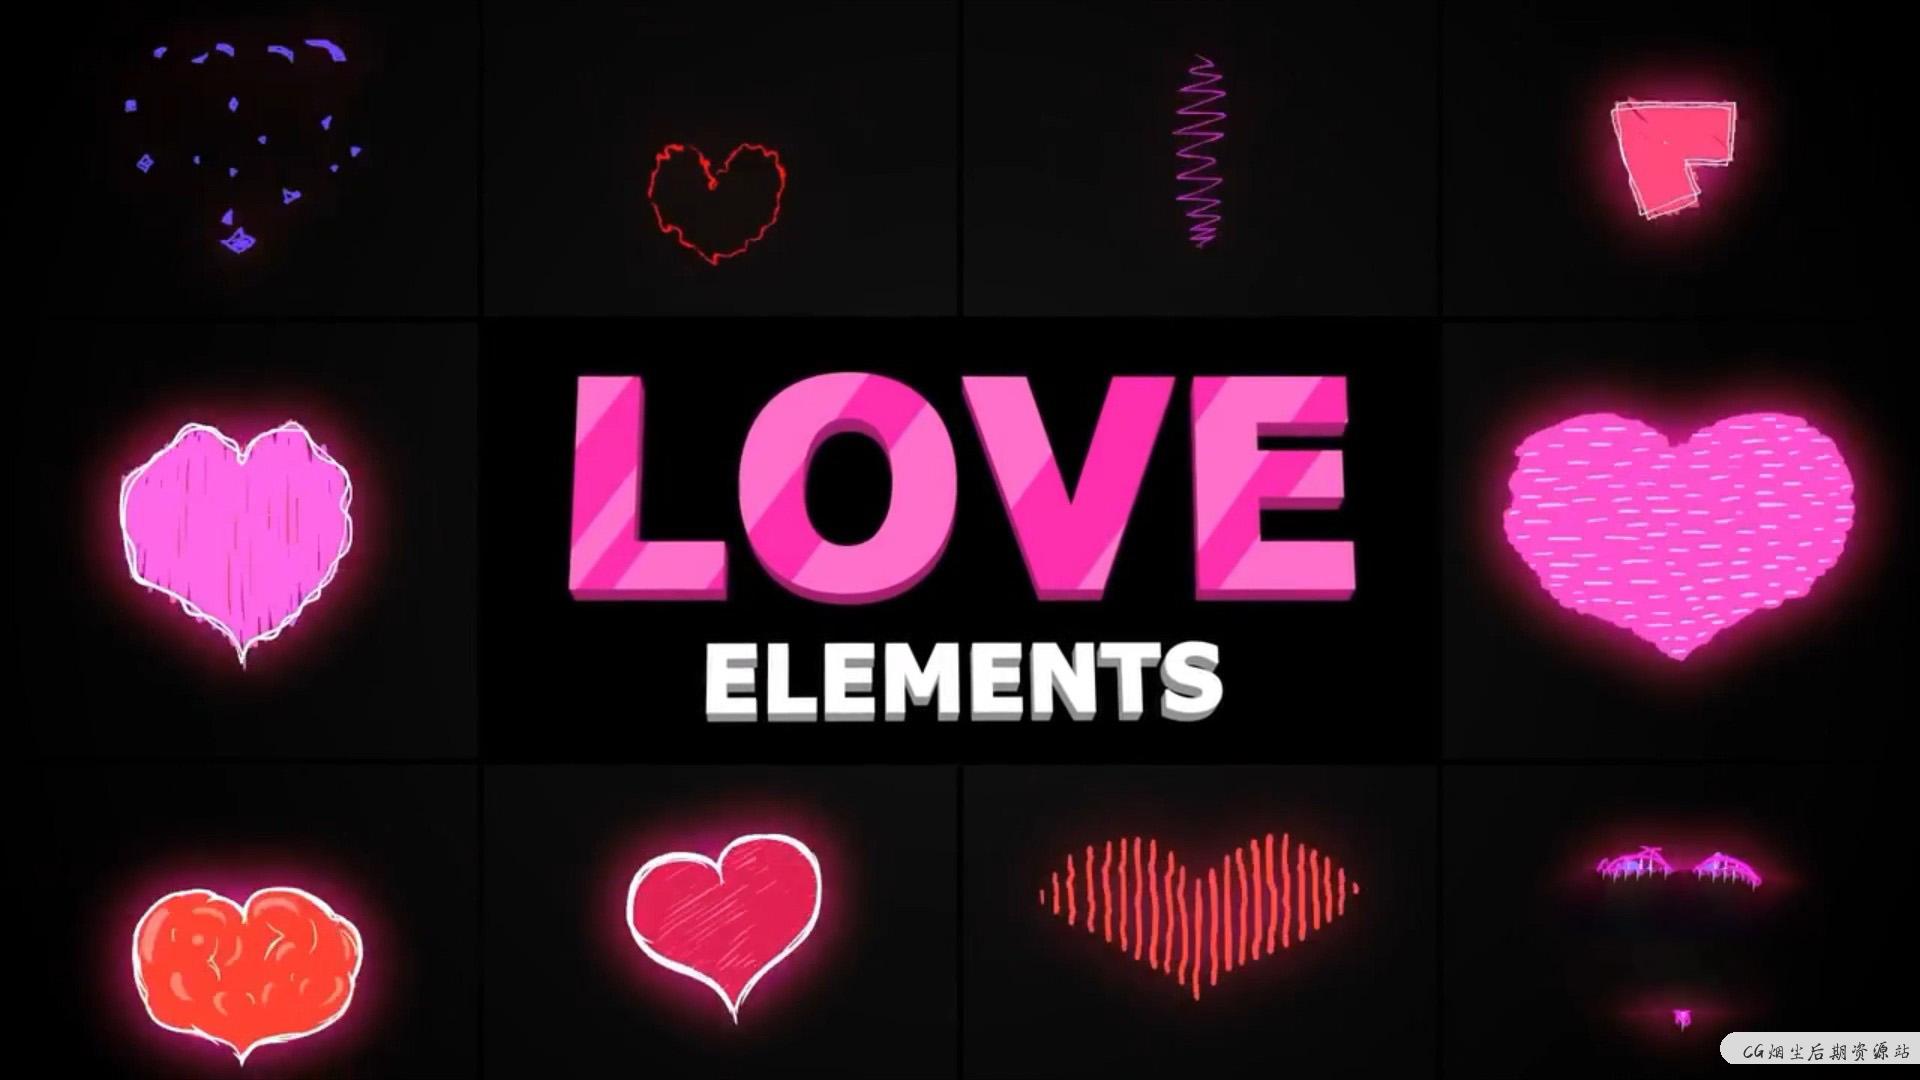 fcpx插件 10组可爱卡通爱心桃心动画素材 Cartoon Love Elements